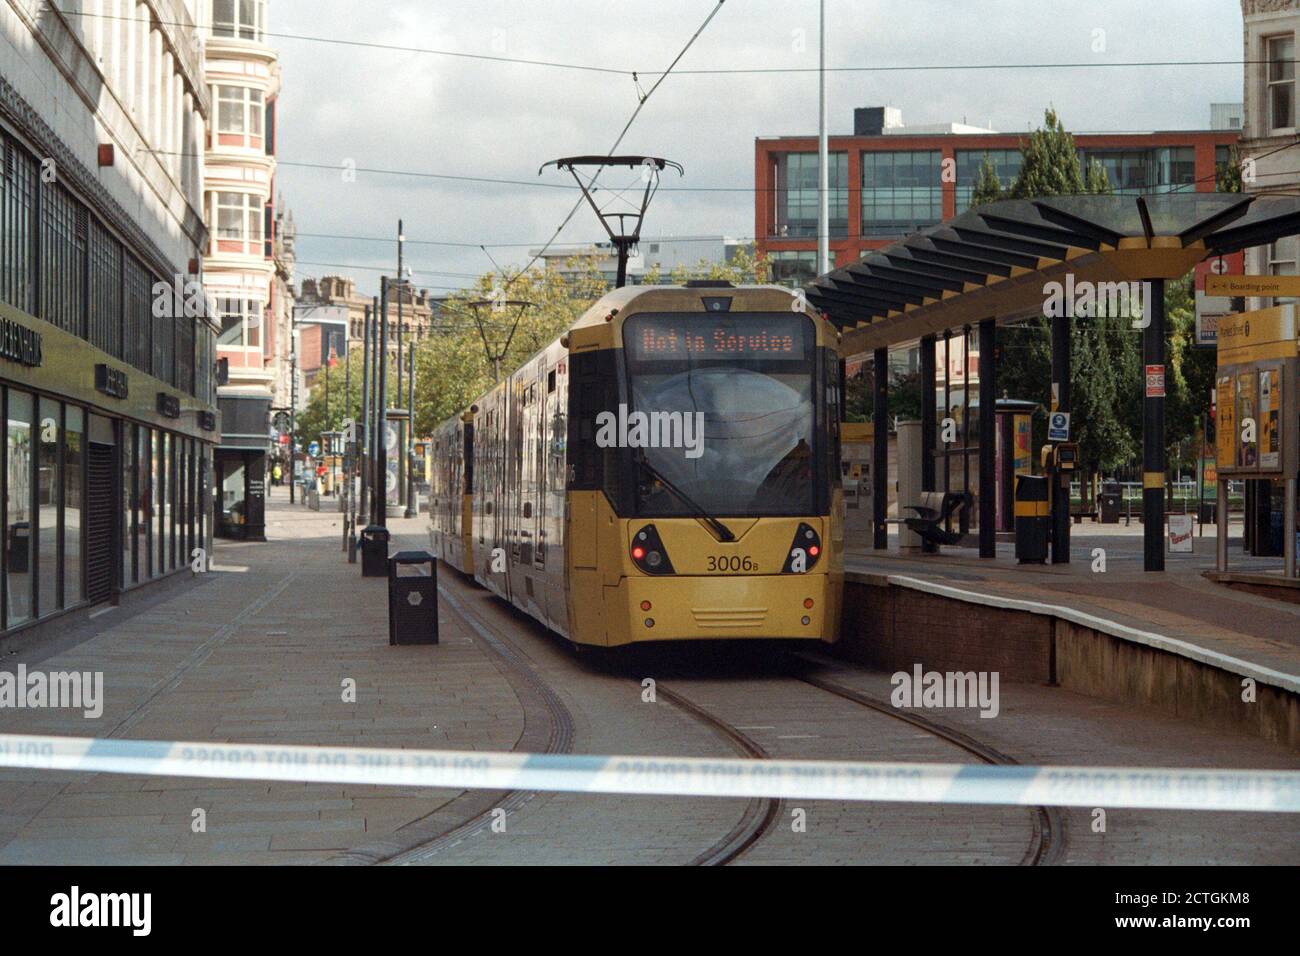 Manchester, 5 septembre 2020: En raison d'un "objet de fantaisie" a été trouvé dans un bus près de la gare routière de Manchester Piccadilly, le tram a été temporairement arrêté. Banque D'Images